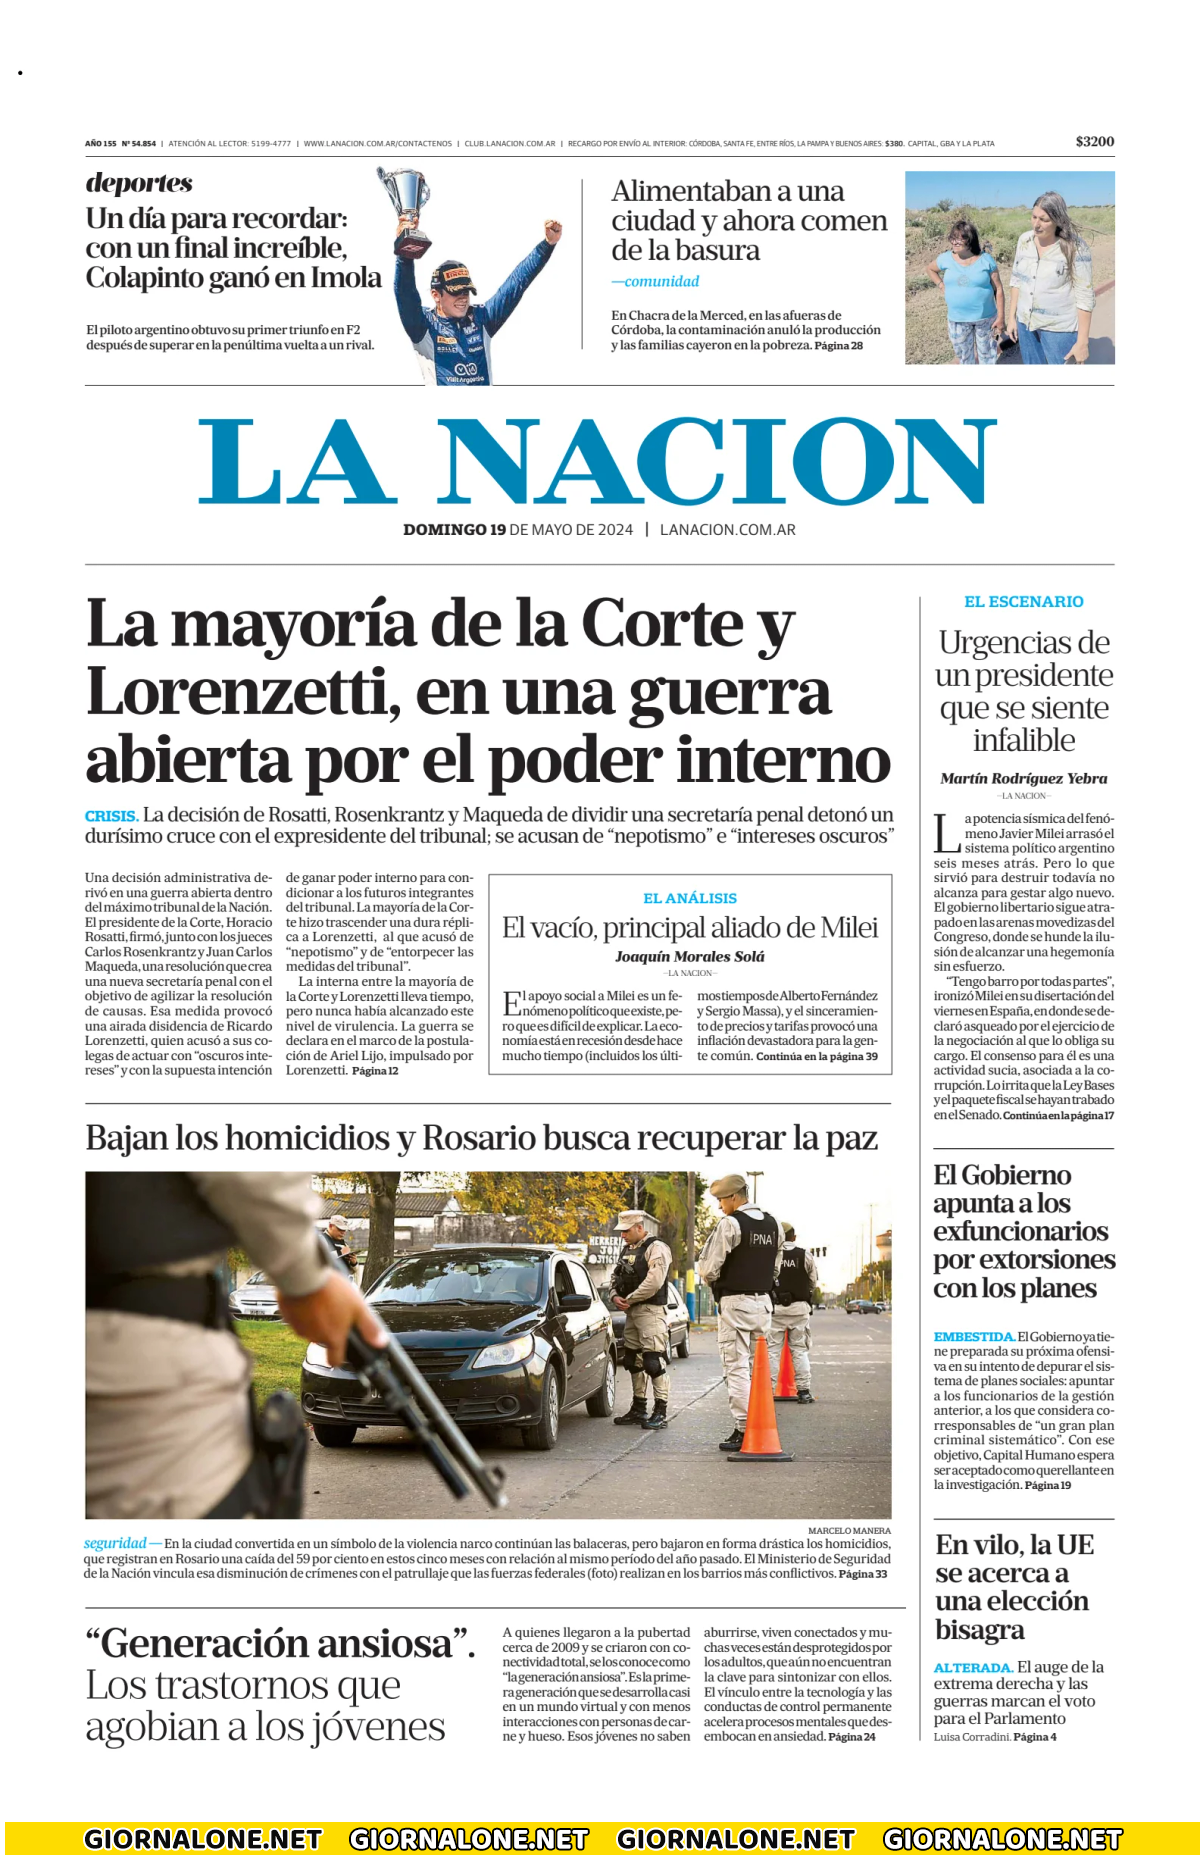 Prima pagina di La Nacion